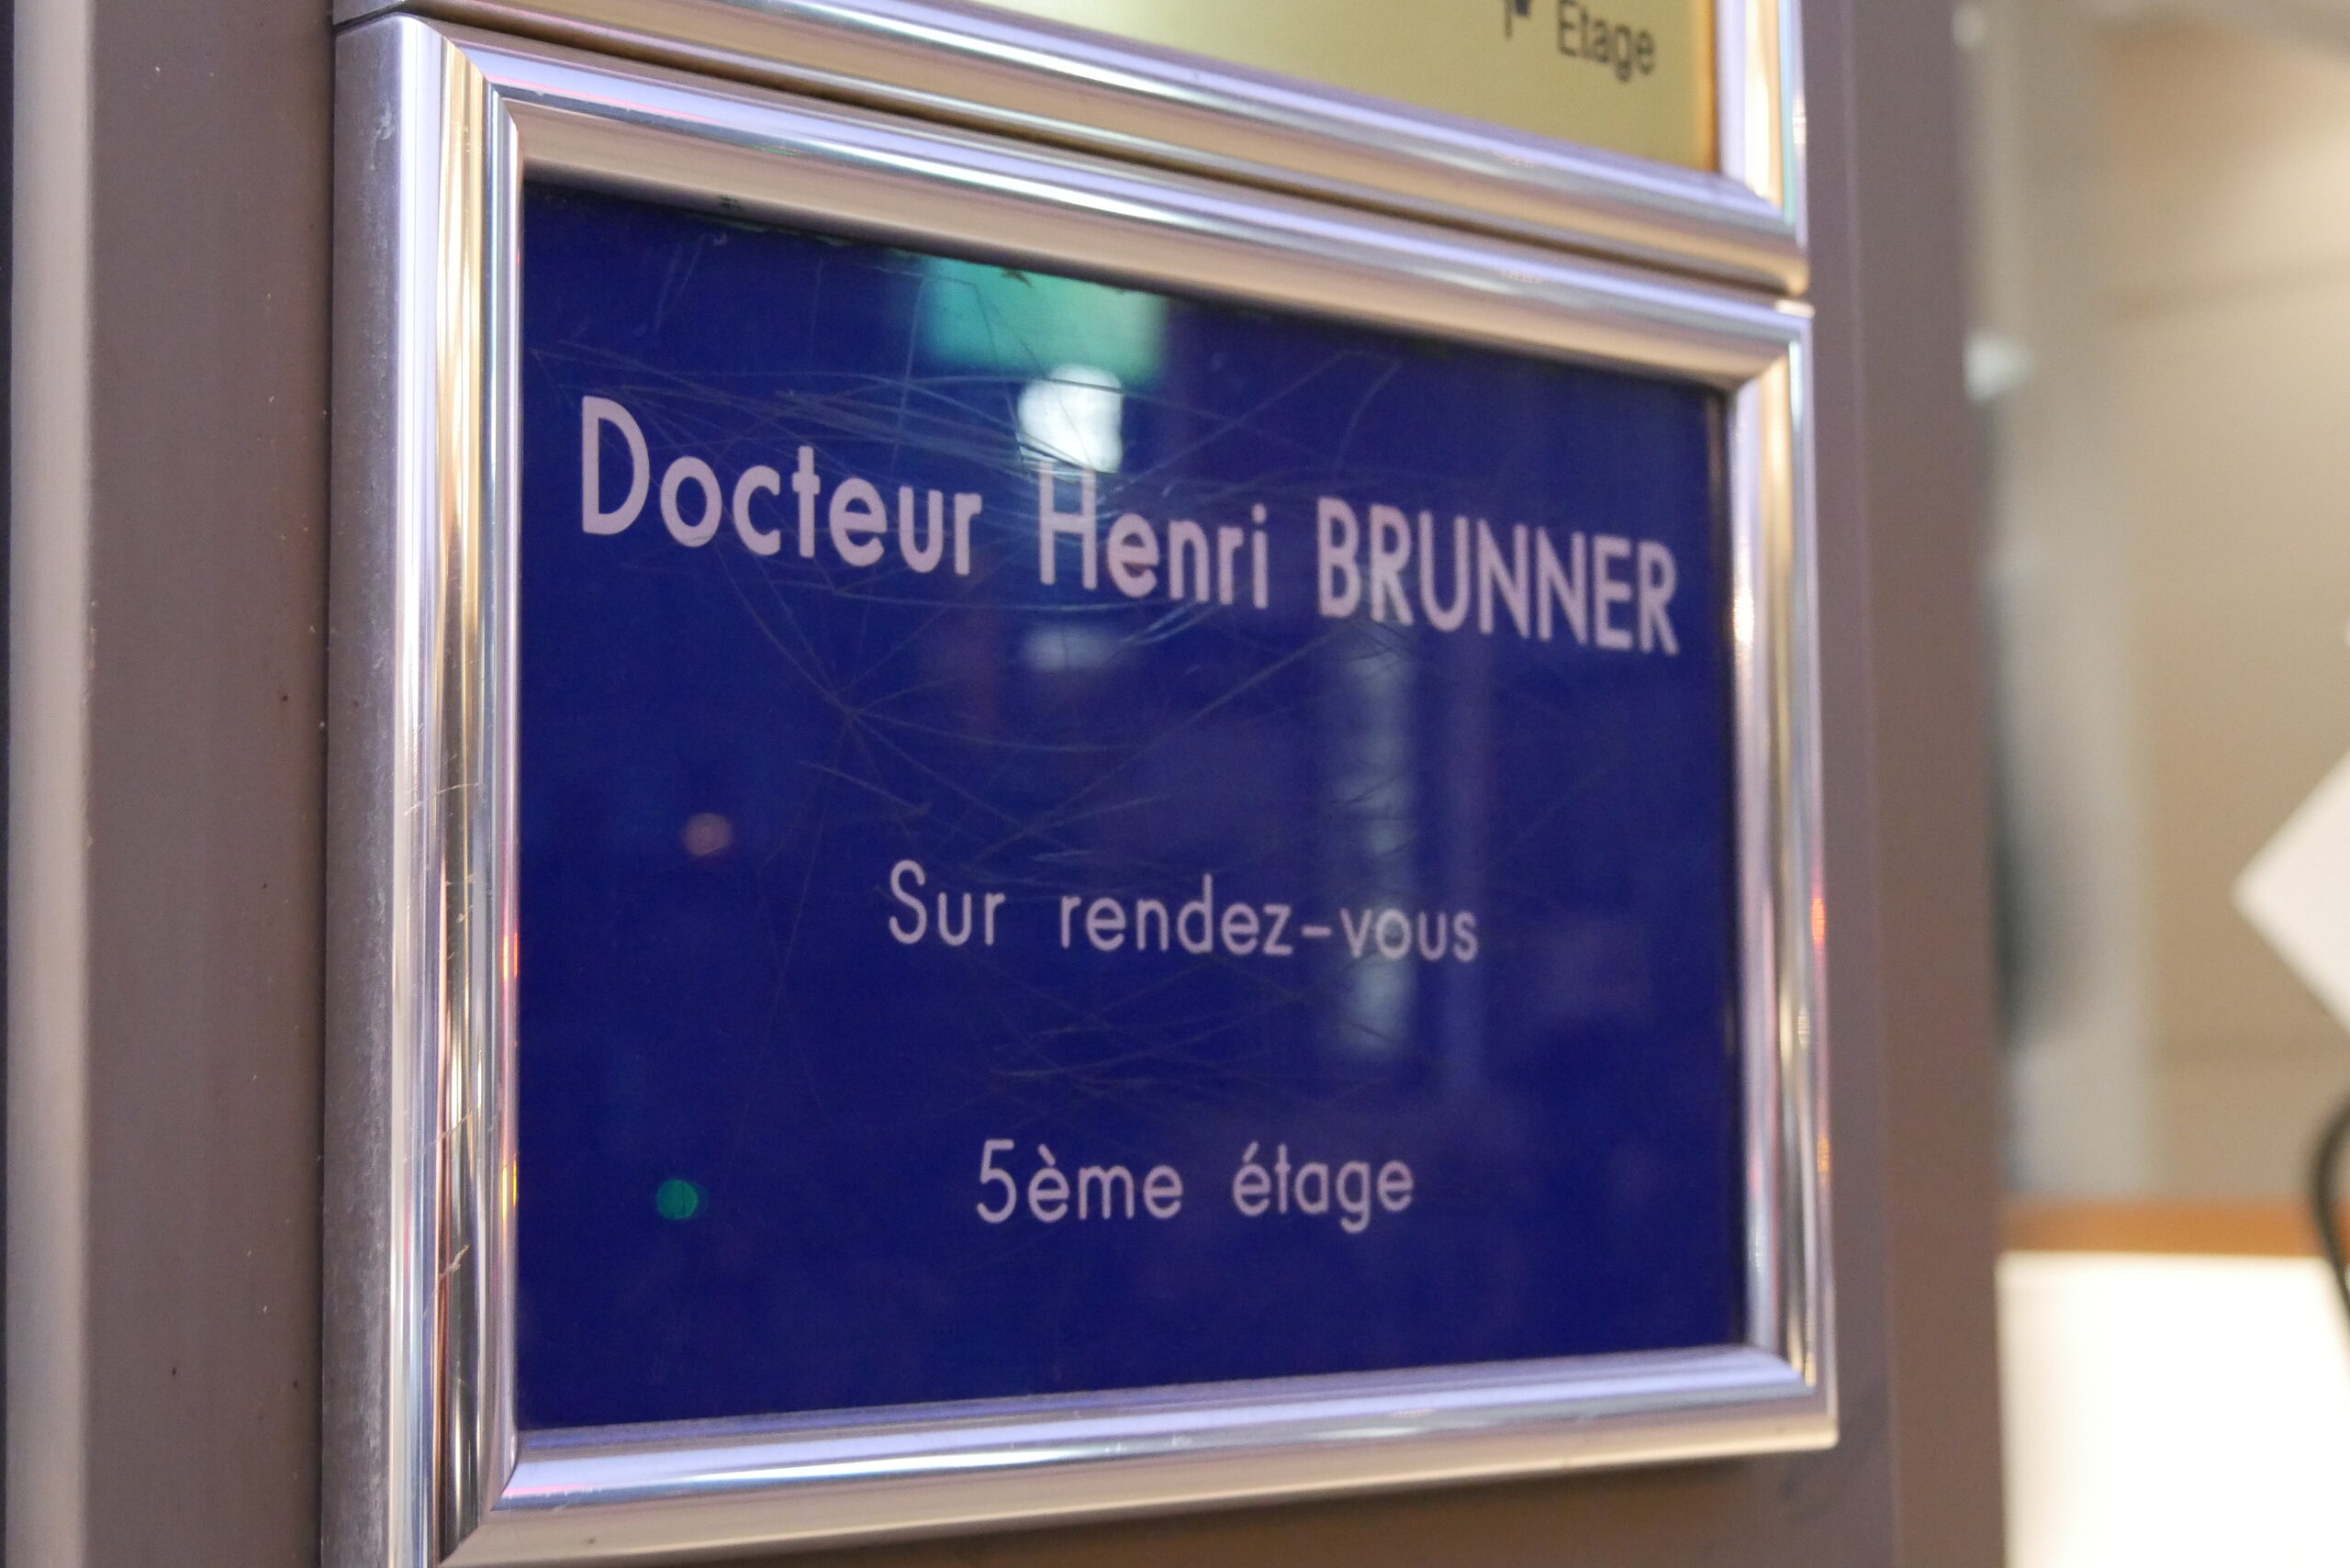 Cinq médecins et 12 témoins : une nouvelle plainte contre l’expert-psychiatre Henri Brunner à l’Ordre des médecins